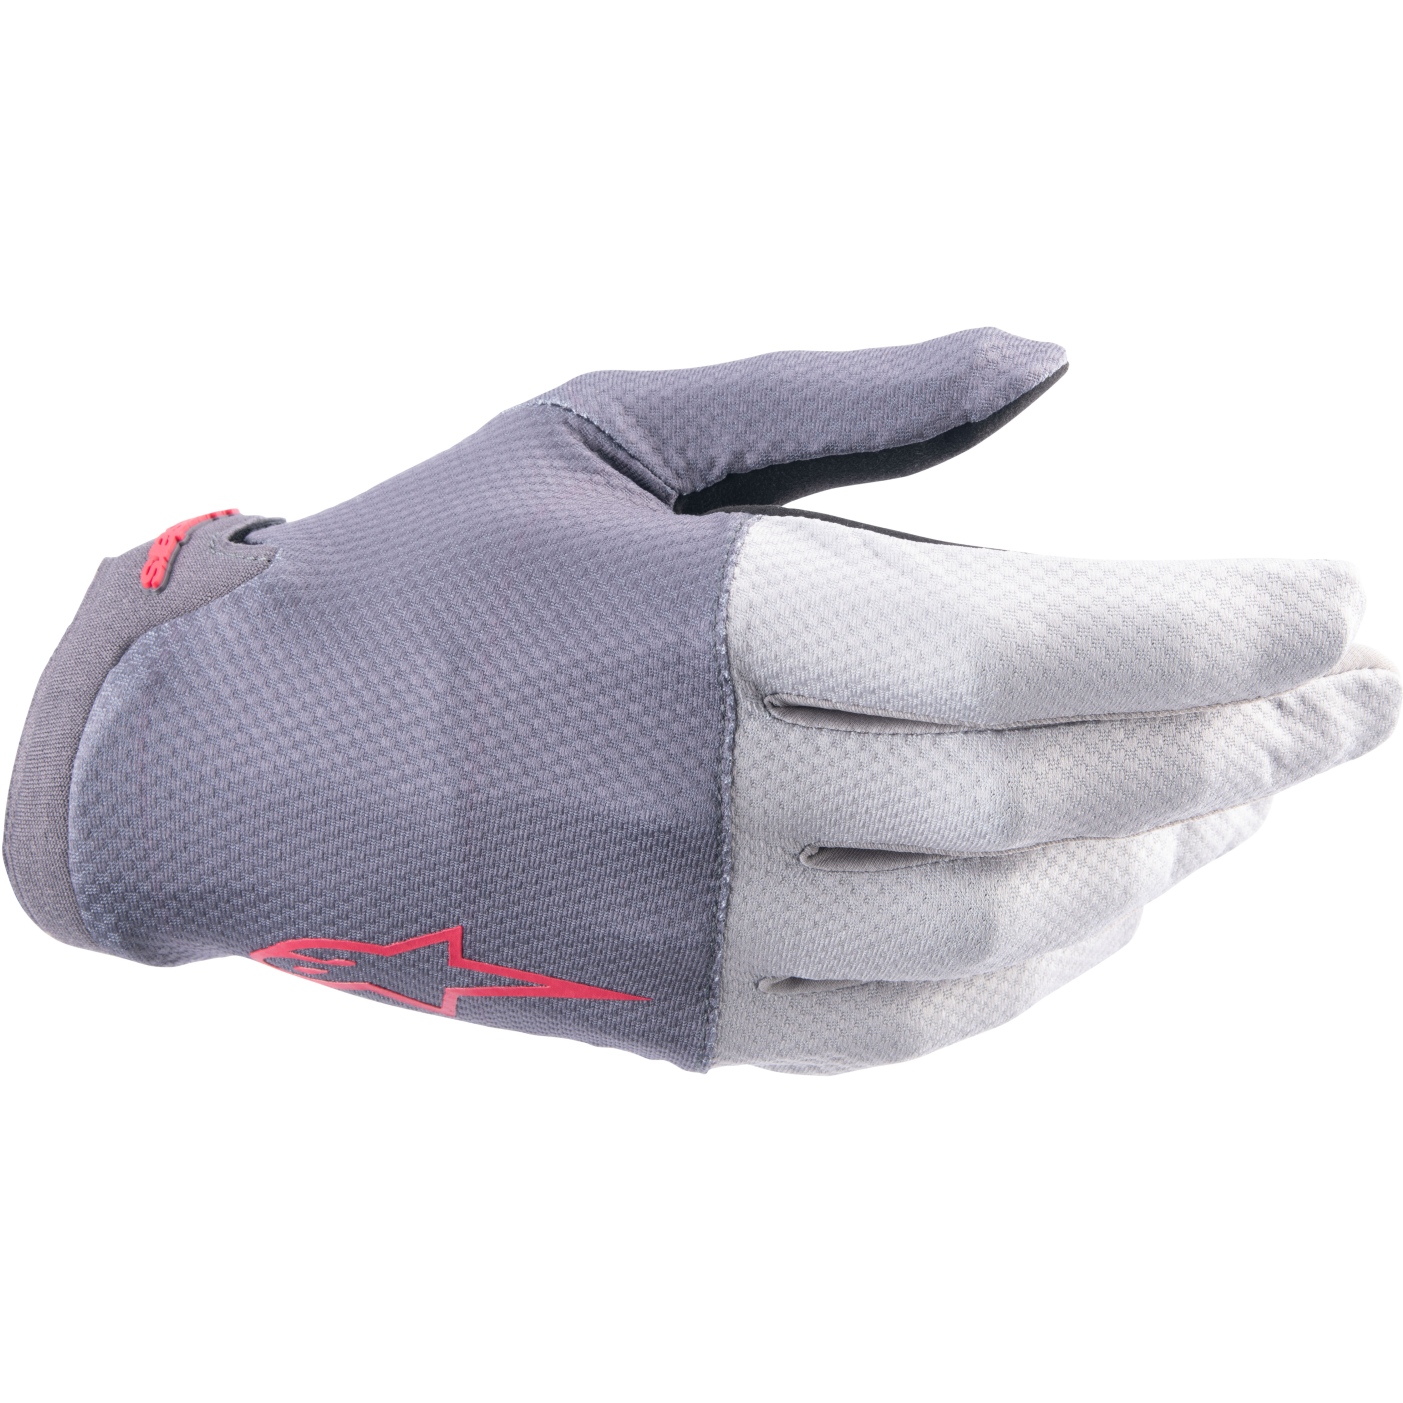 Productfoto van Alpinestars A-Aria Handschoenen - dark gray